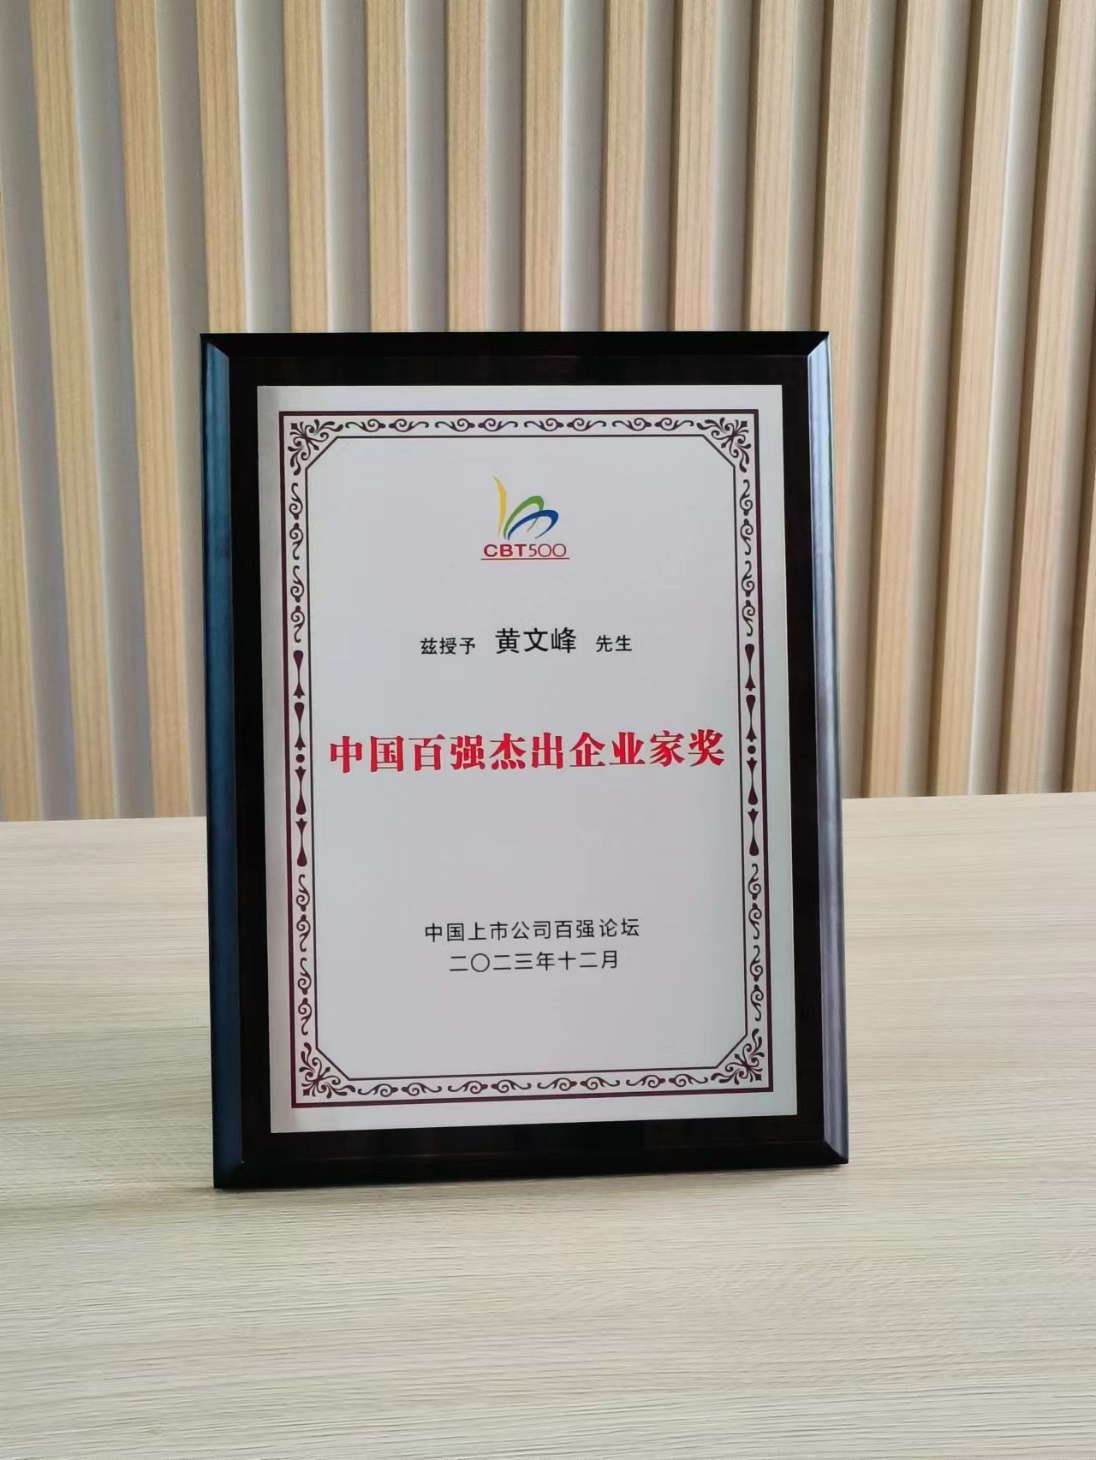 天能重工董事長黃文峰先生榮獲“中國百強杰出企業家獎”